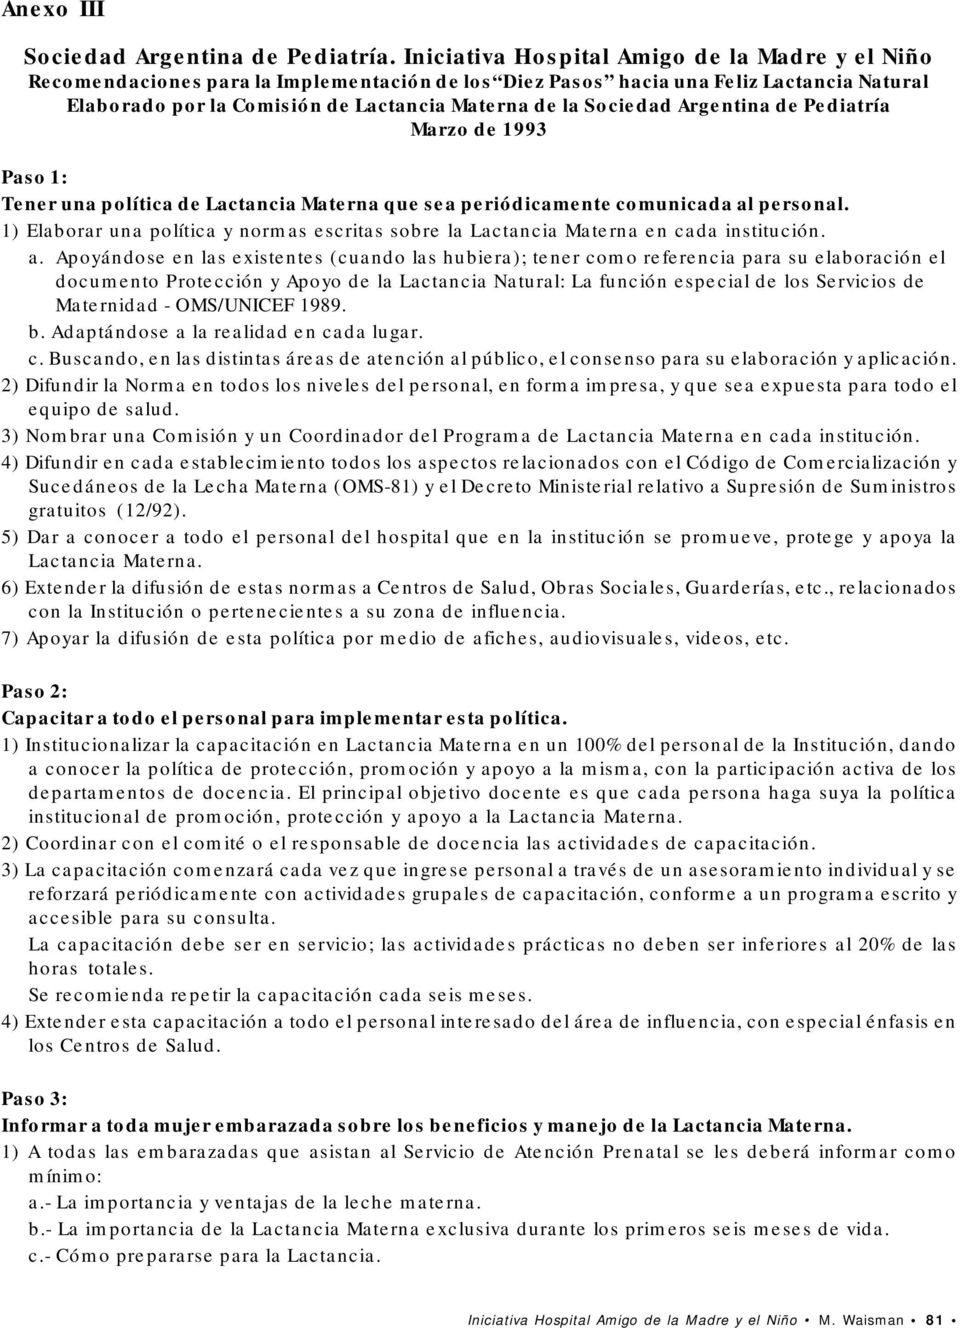 Sociedad Argentina de Pediatría Marzo de 1993 Paso 1: Tener una política de Lactancia Materna que sea periódicamente comunicada al personal.